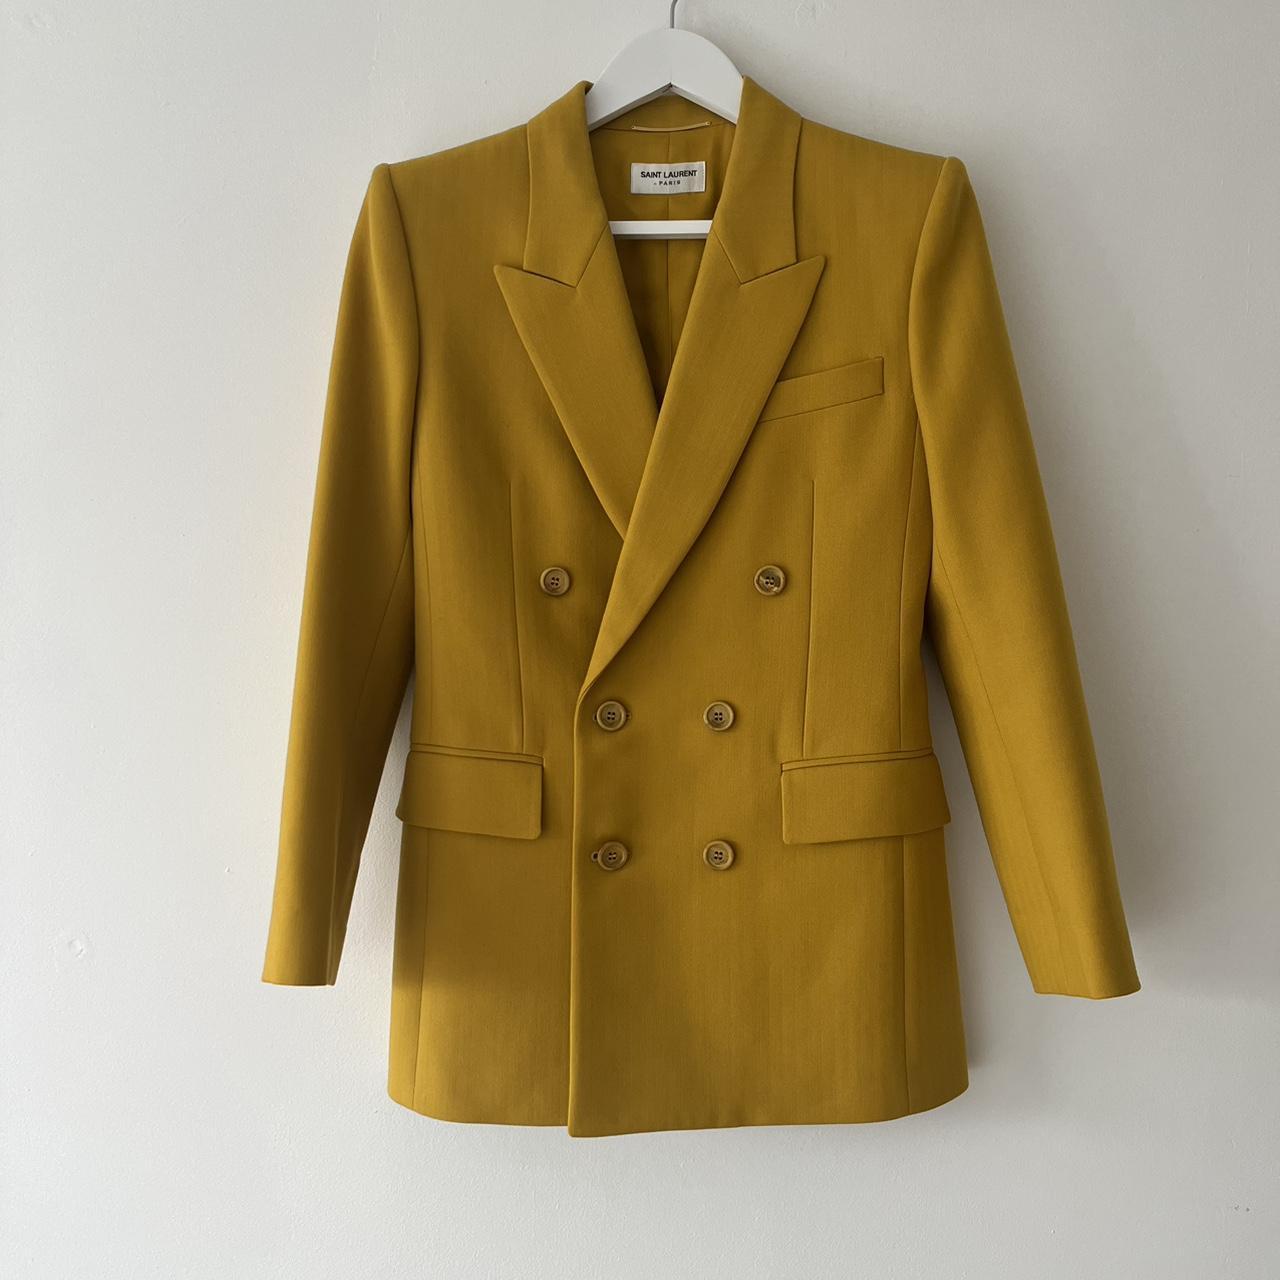 Yves Saint Laurent. Wool blazer in saffron yellow/... - Depop